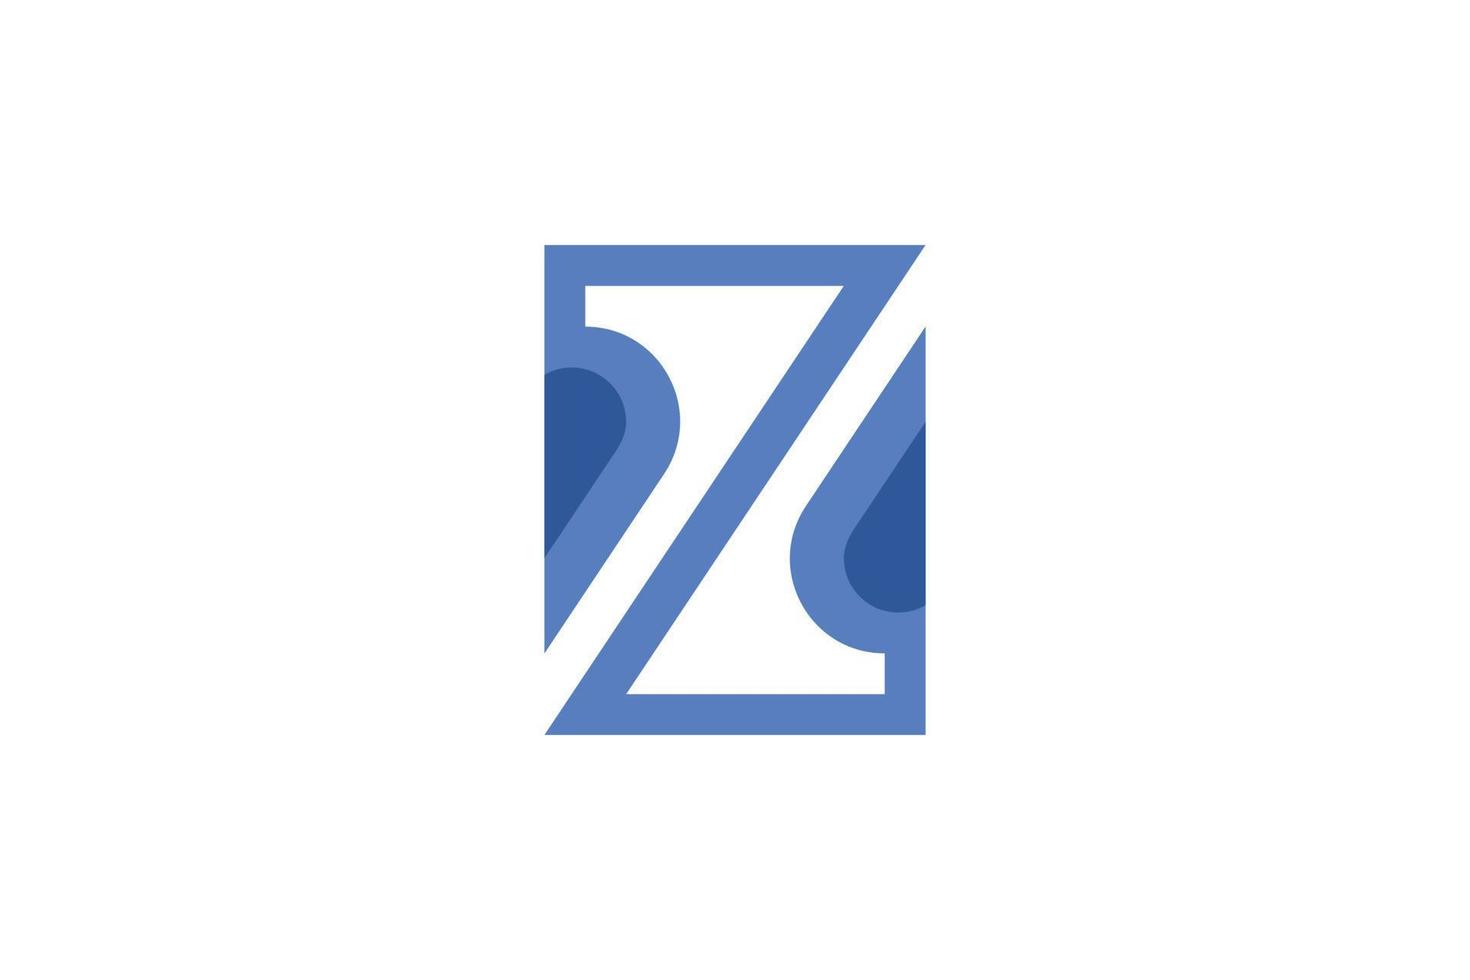 Creative Letter Z Logo Templates vector